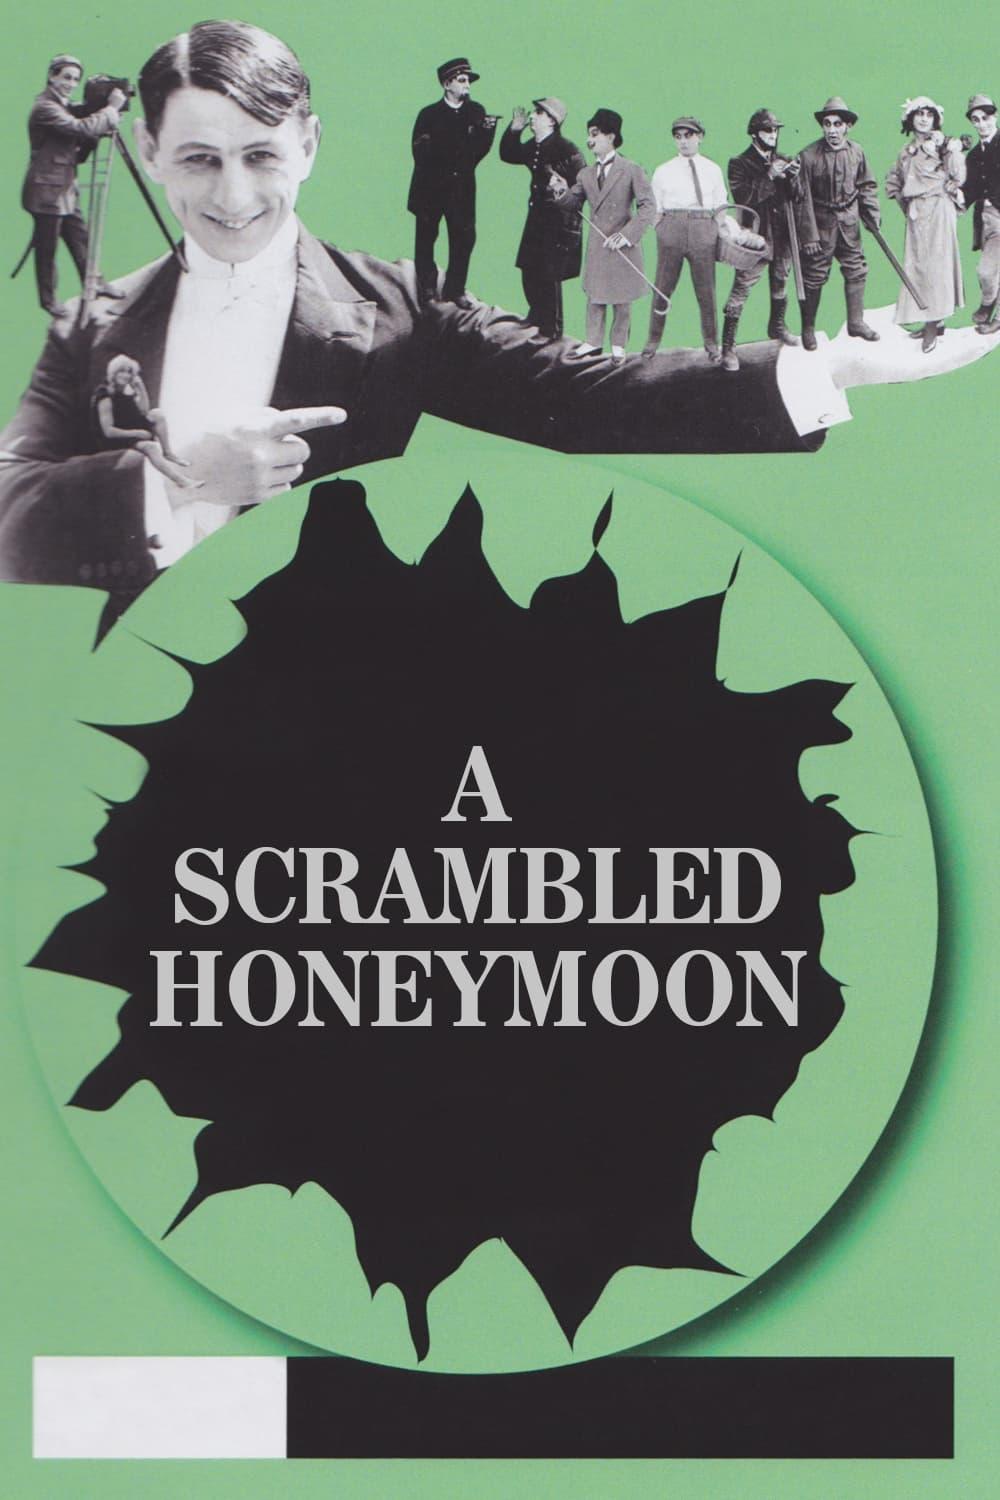 A Scrambled Honeymoon poster